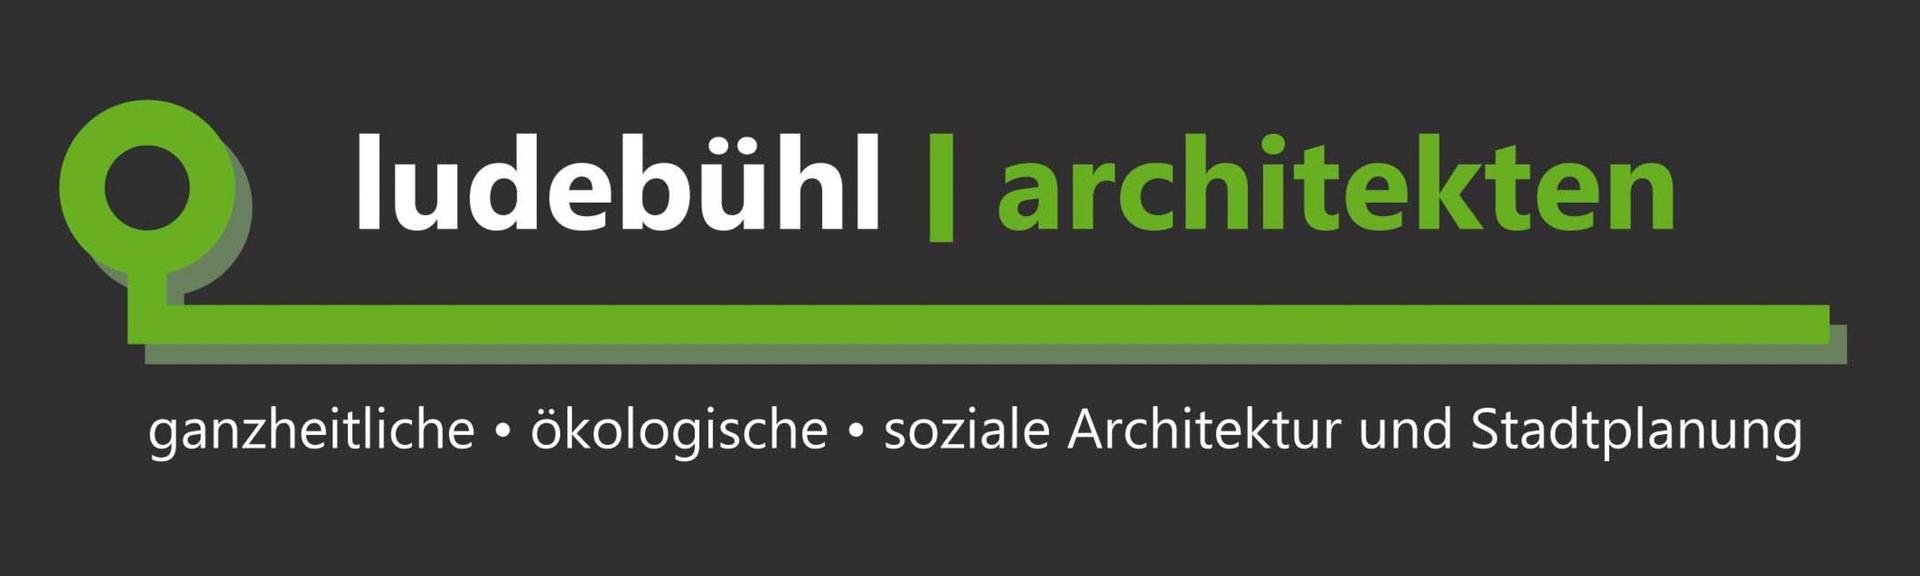 ludebühl | architekten Logo